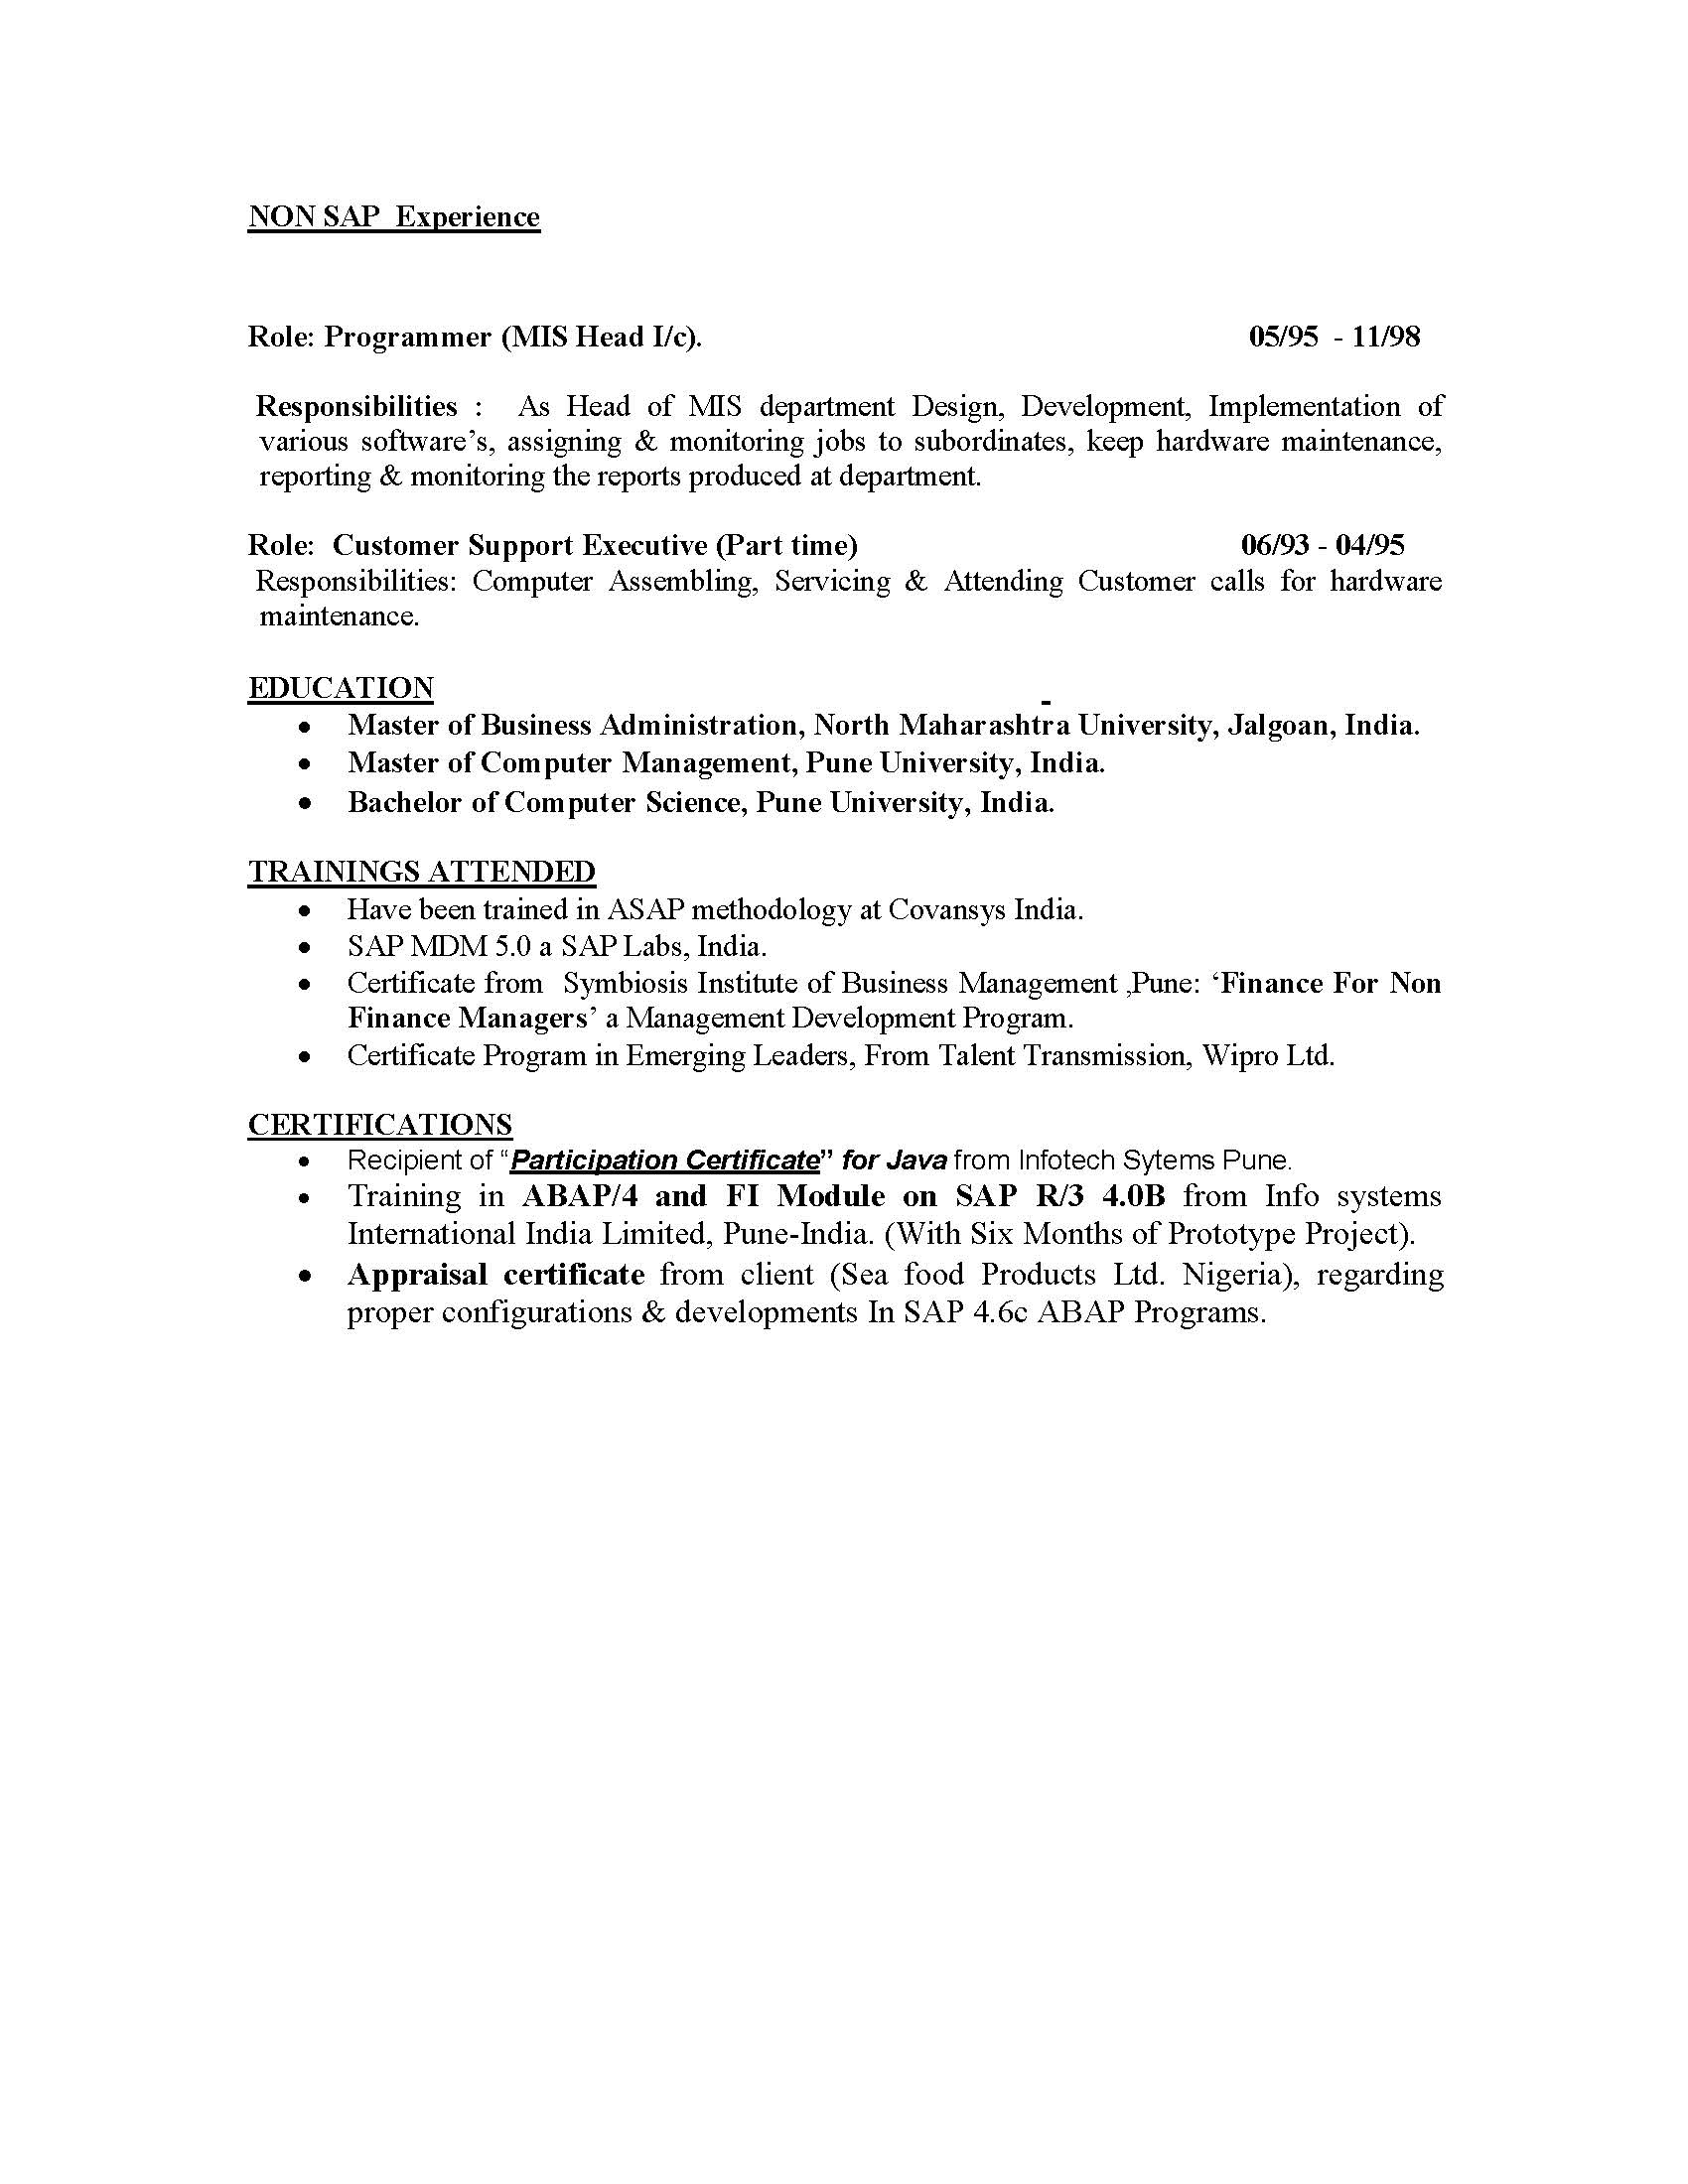 ISU Billing and Invoice Consultant Sample Resume